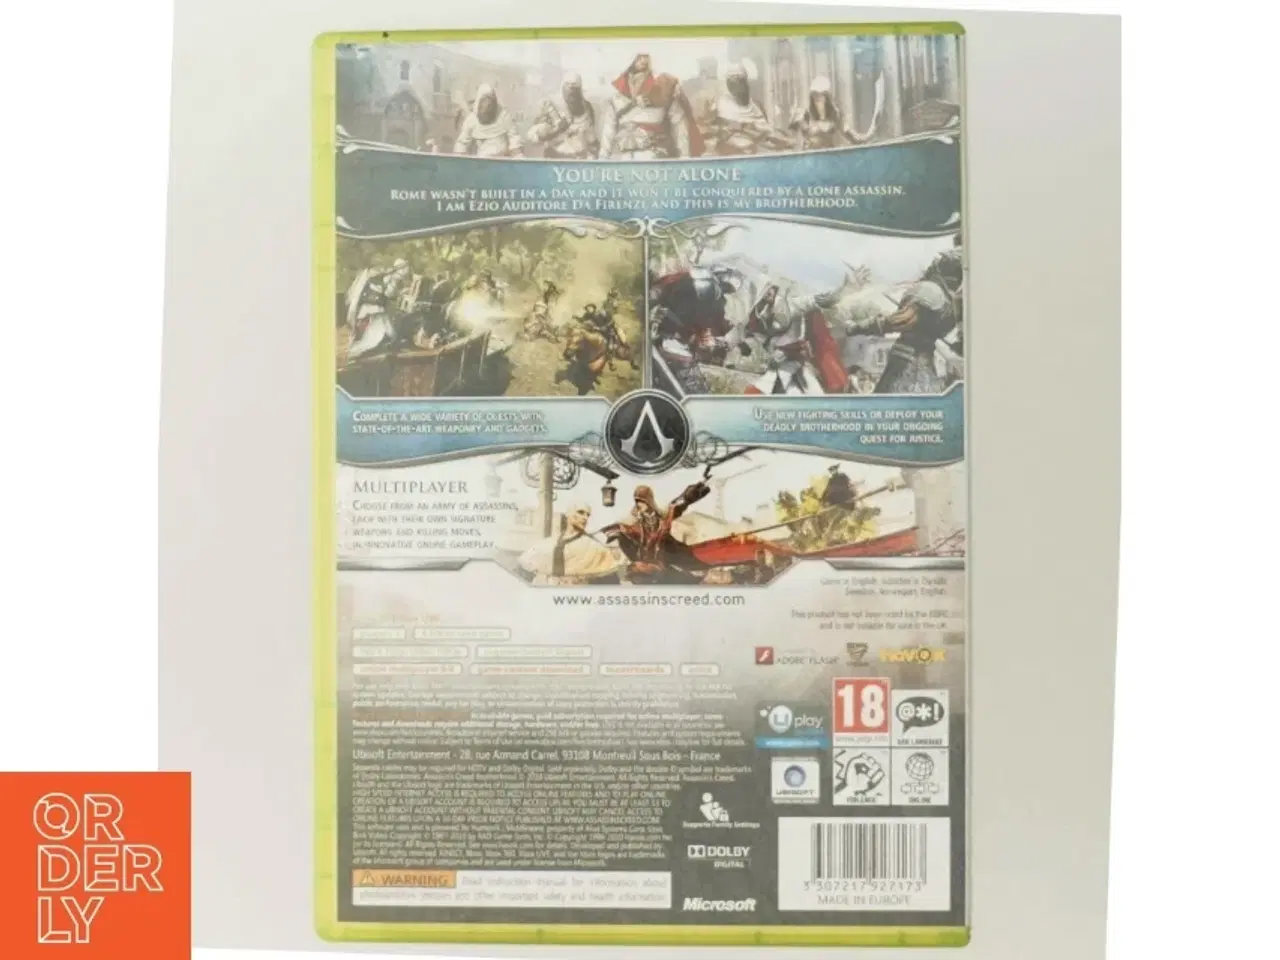 Billede 3 - Assassin's Creed Brotherhood til Xbox 360 fra Ubisoft